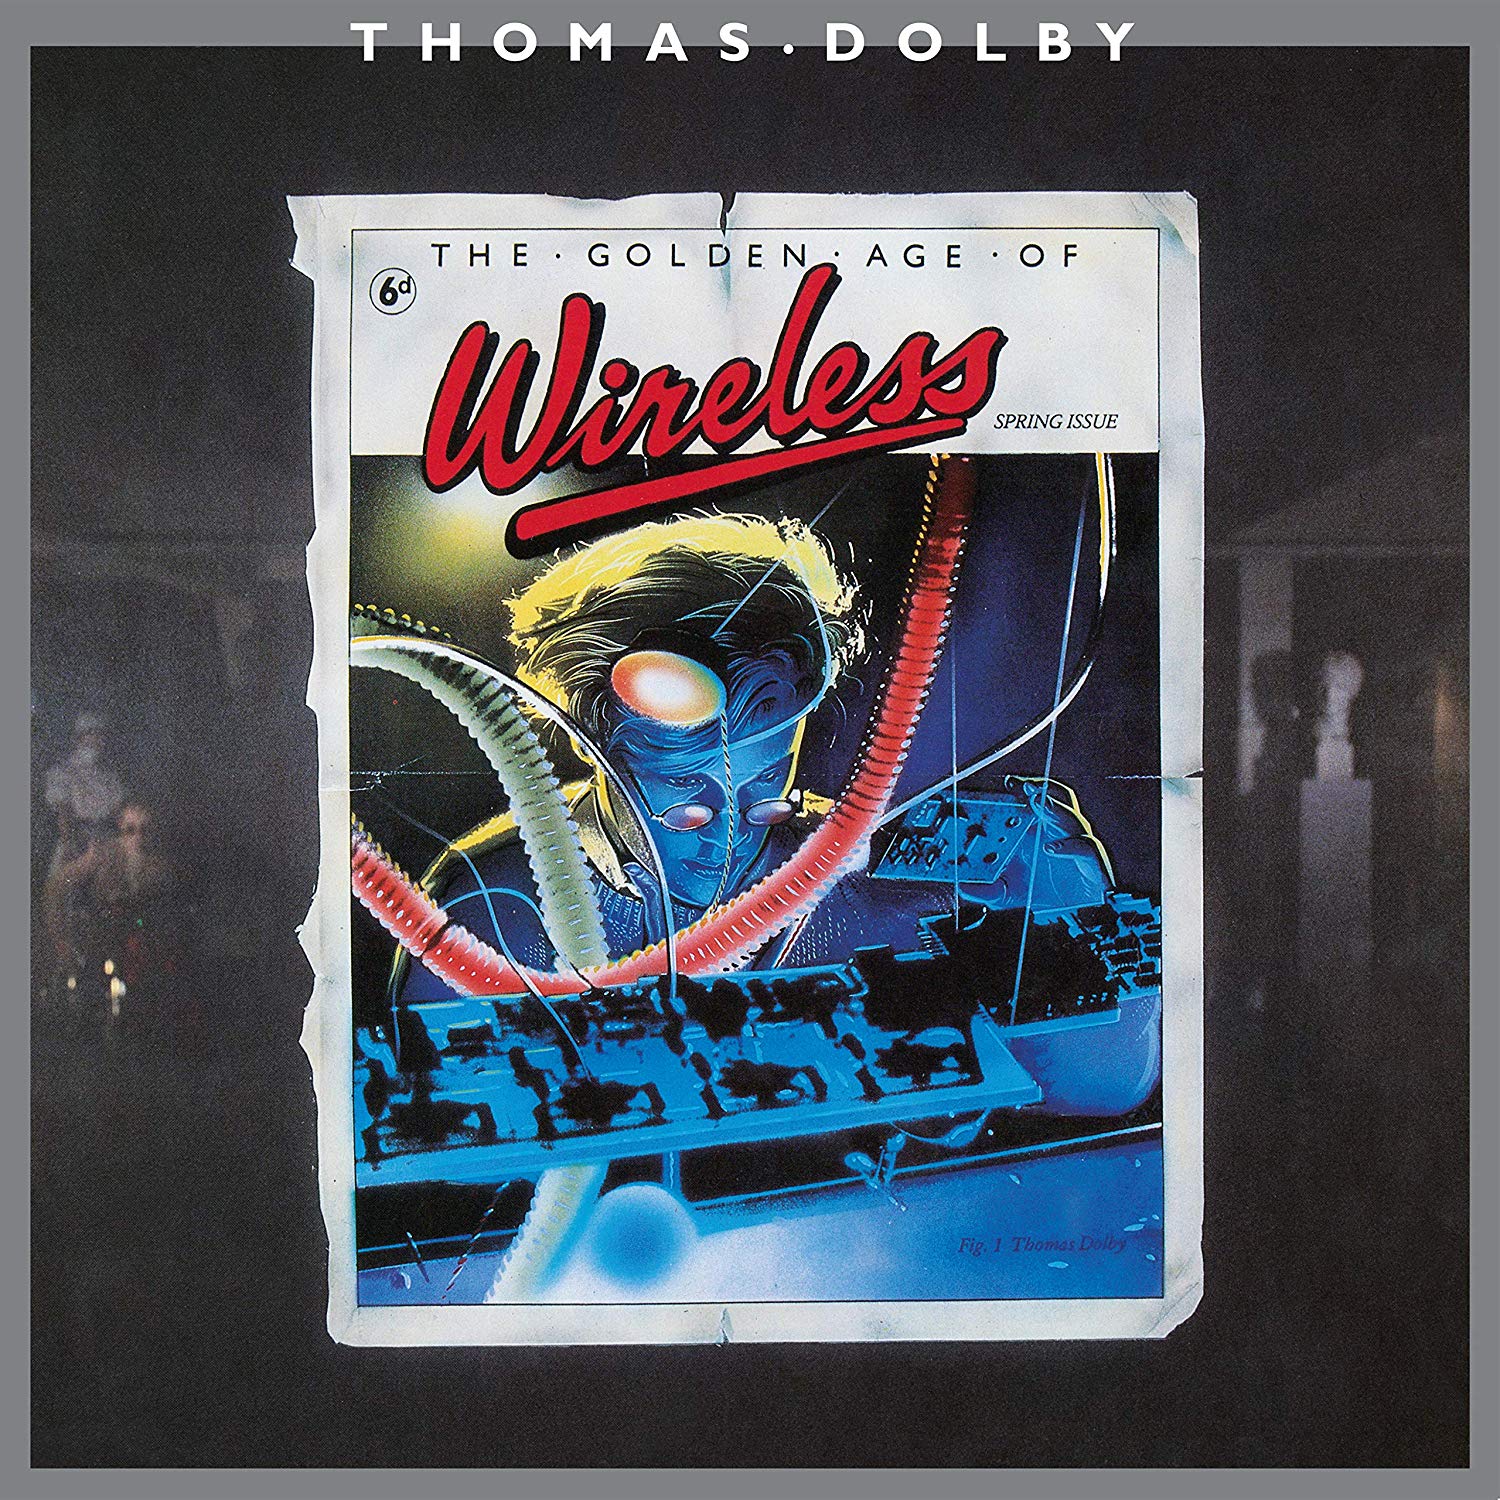 Vinile Thomas Dolby - Golden Age Of Wireless NUOVO SIGILLATO, EDIZIONE DEL 19/11/2019 SUBITO DISPONIBILE